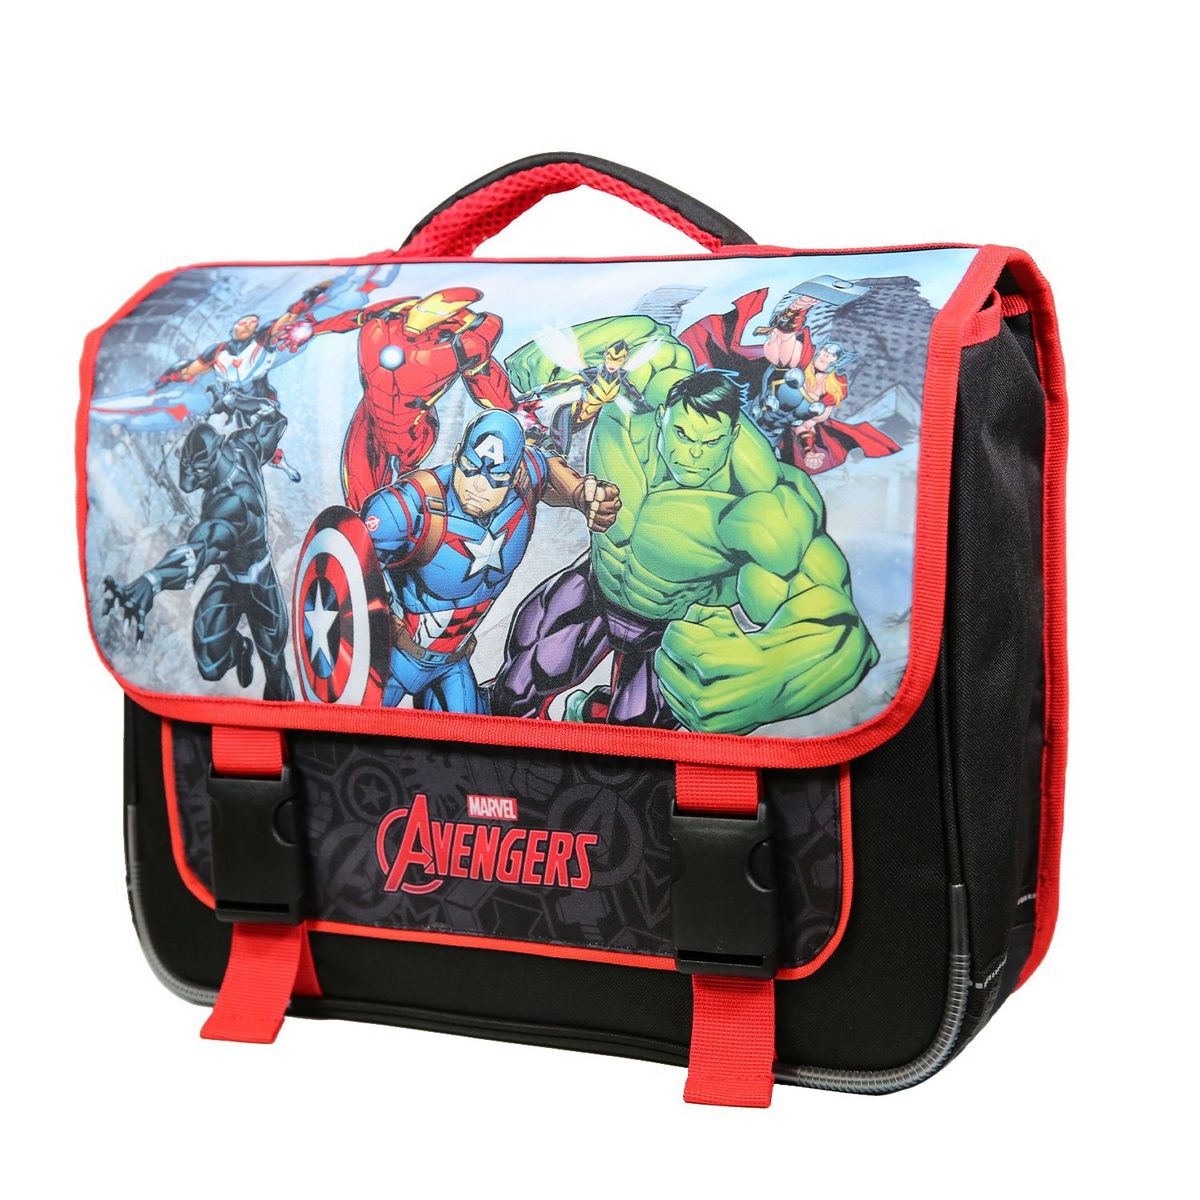 Bagtrotter BAGTROTTER Cartable 38 cm Marvel Avengers Multicolore